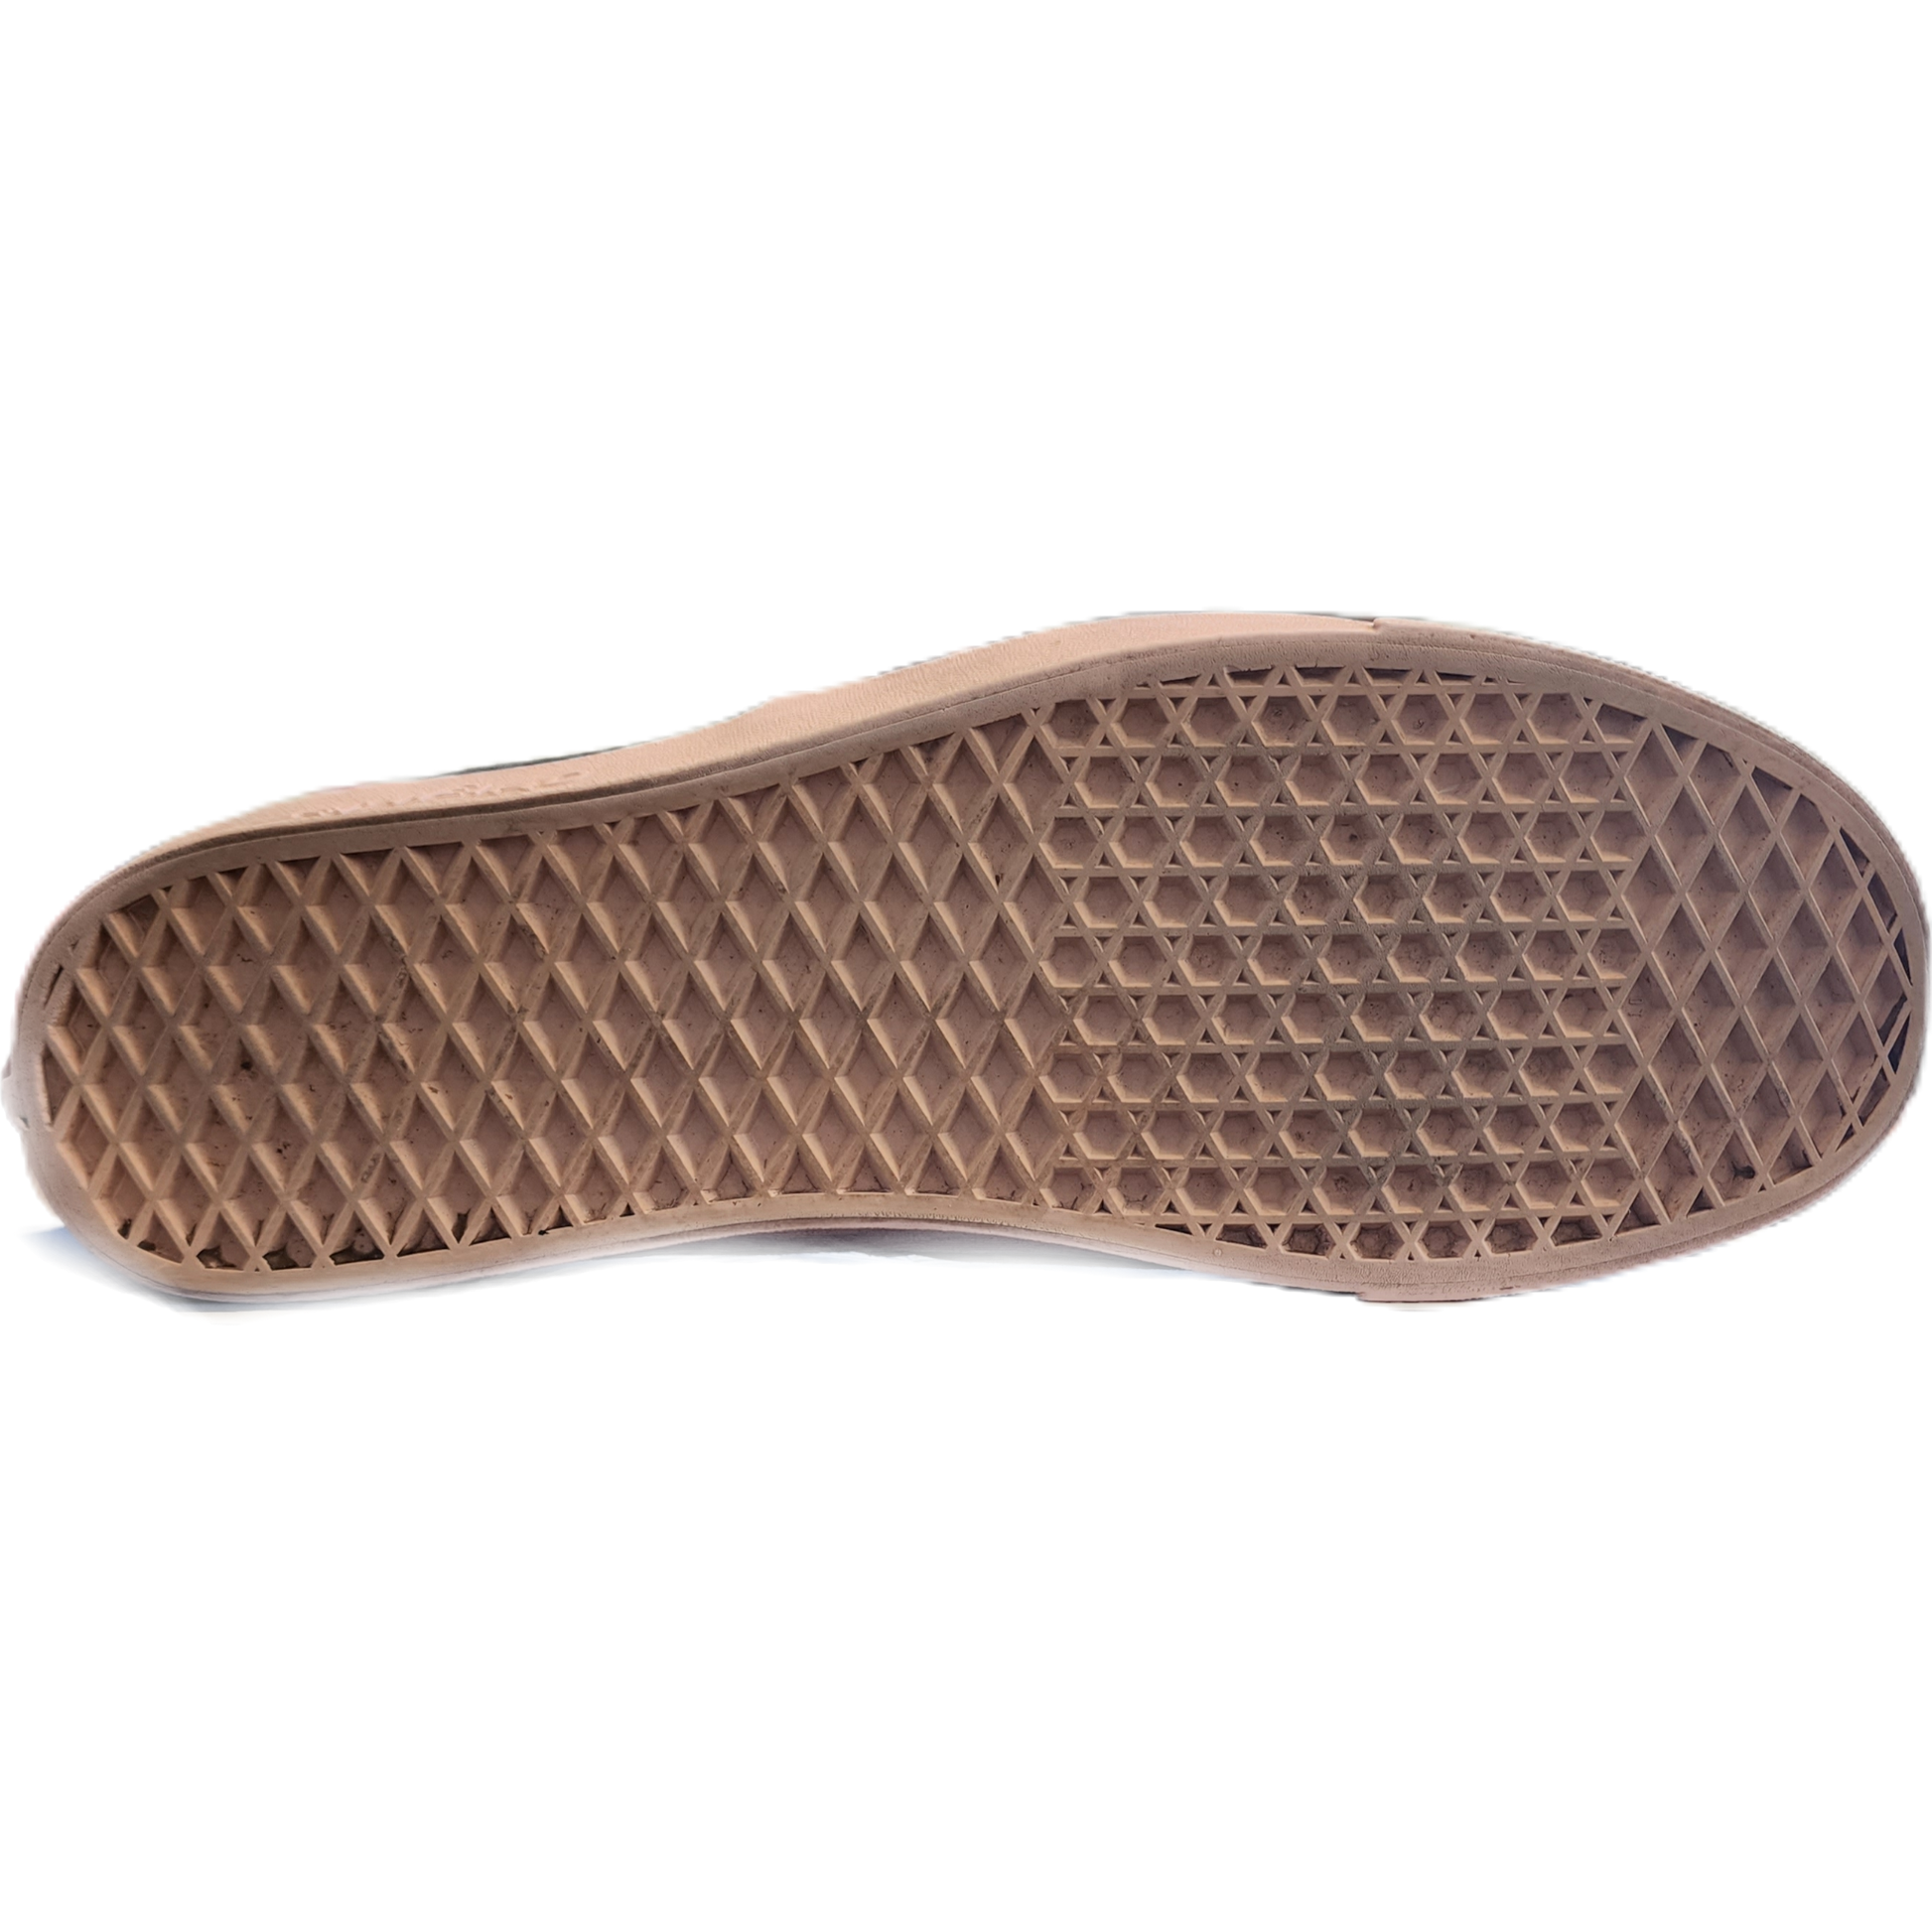 vans shoe sole